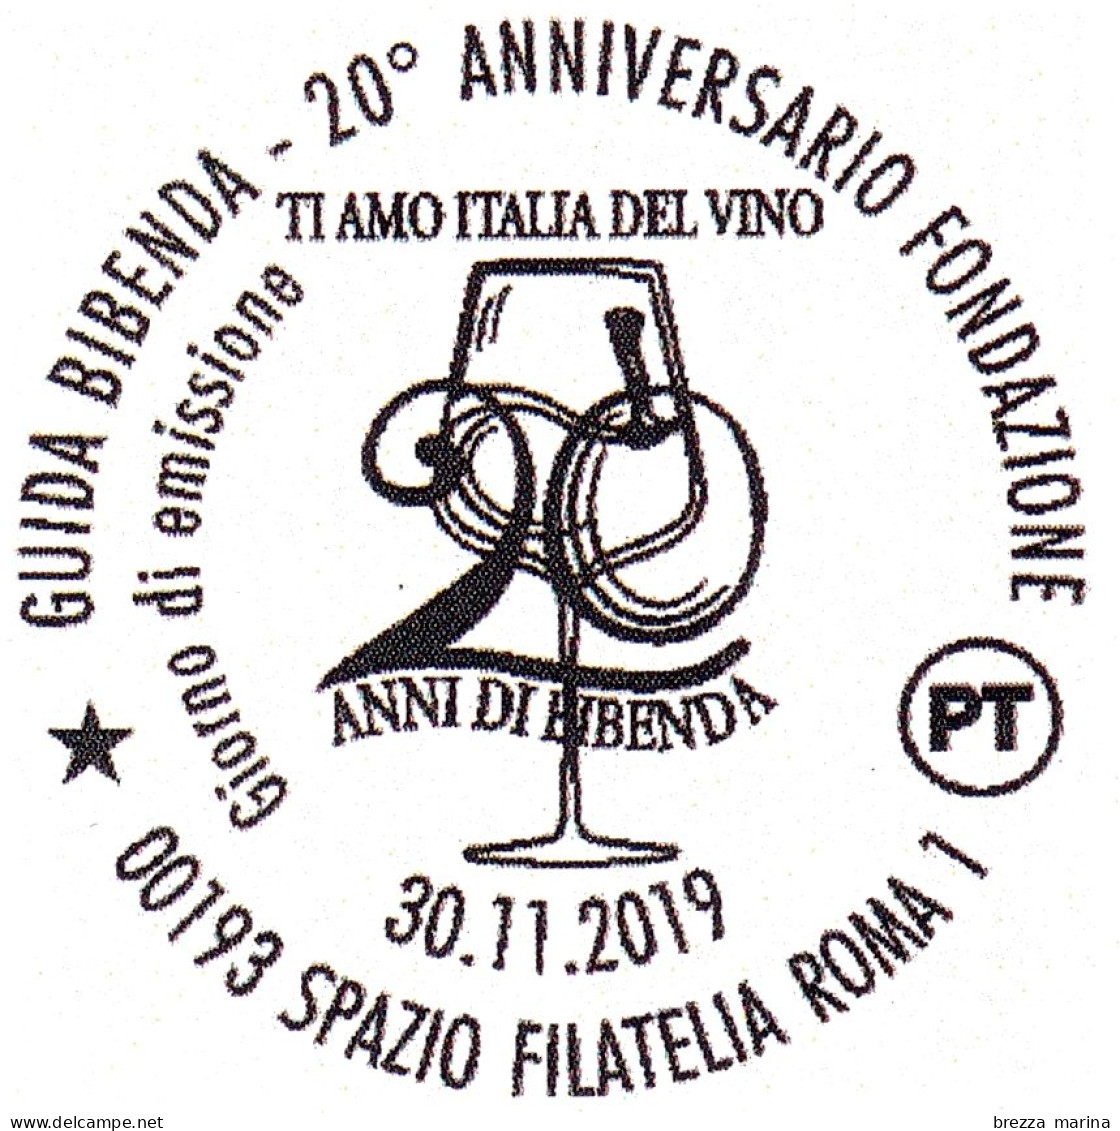 ITALIA - Usato - 2019 - 20 Anni Della Guida Bibenda – Calice Di Vino - B - 2011-20: Gebraucht